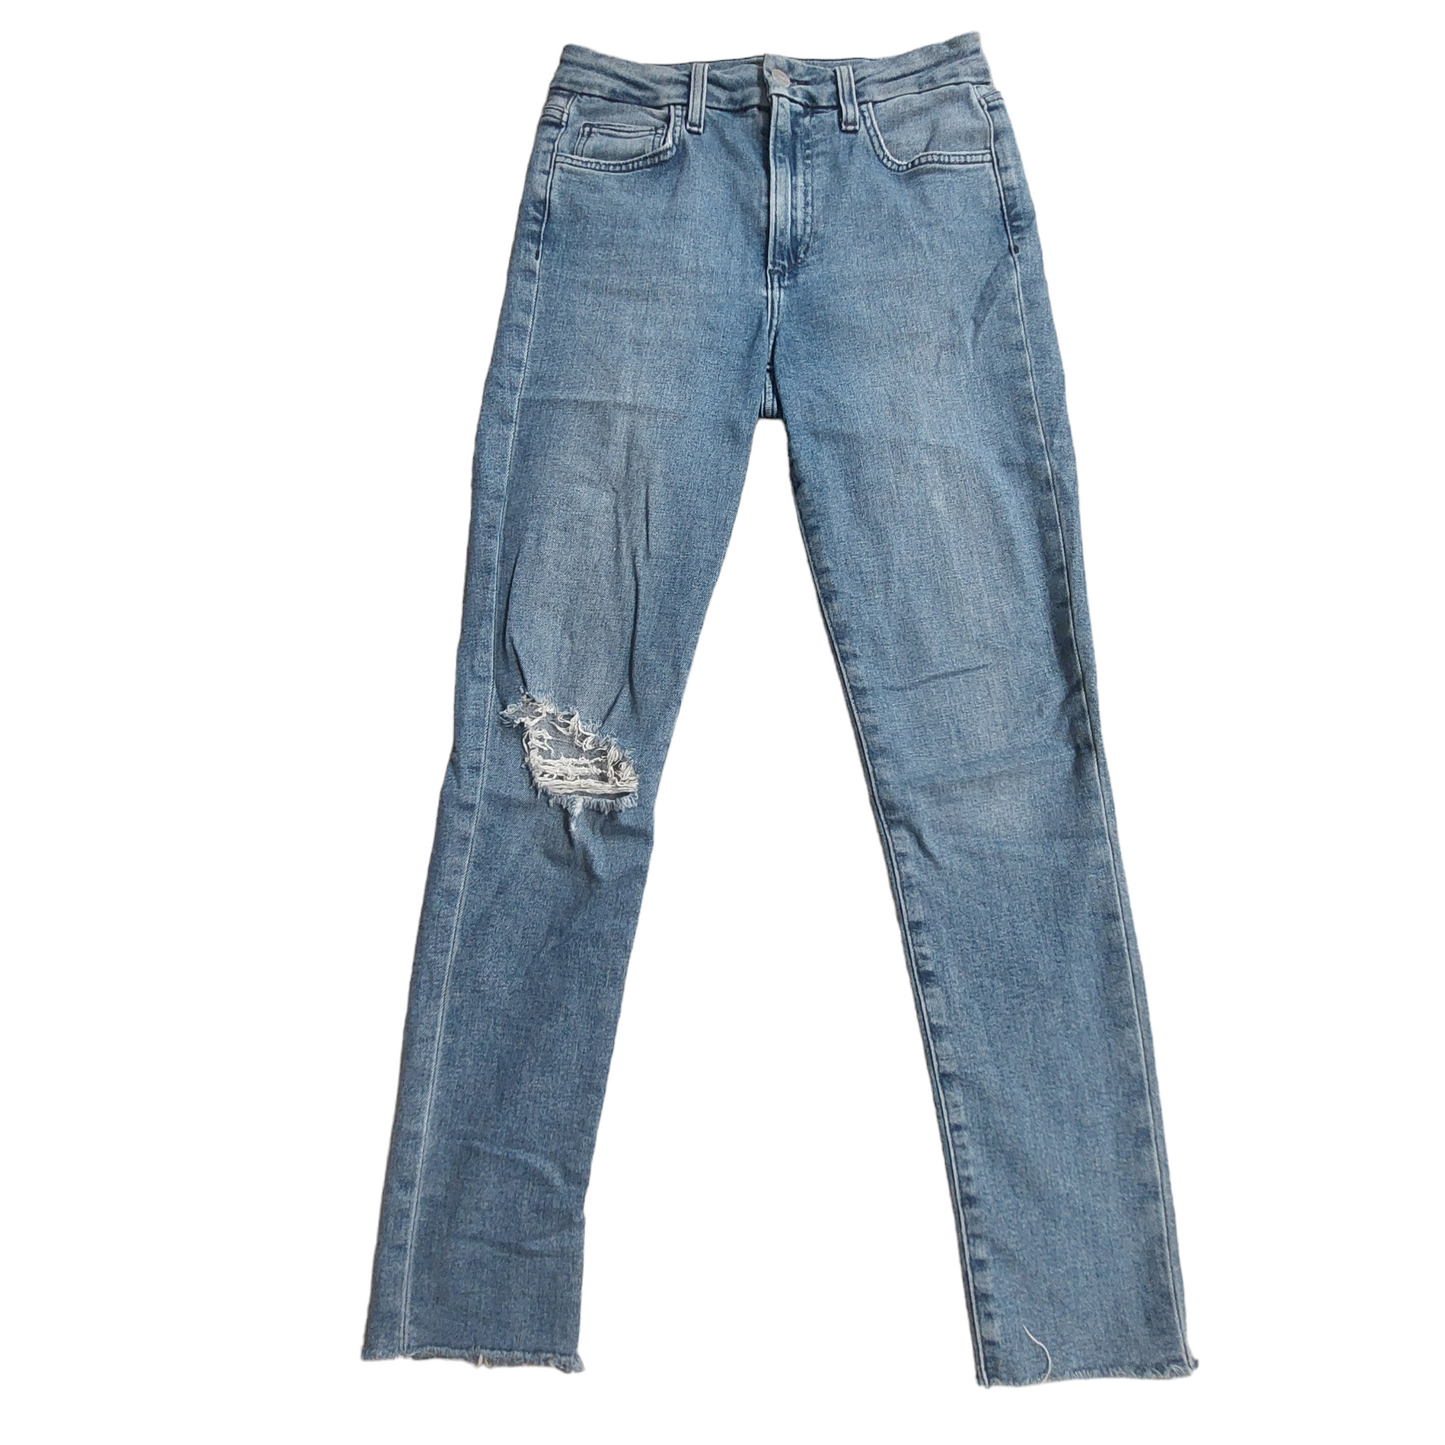 Denim Jeans Designer Joes Jeans, Size 2